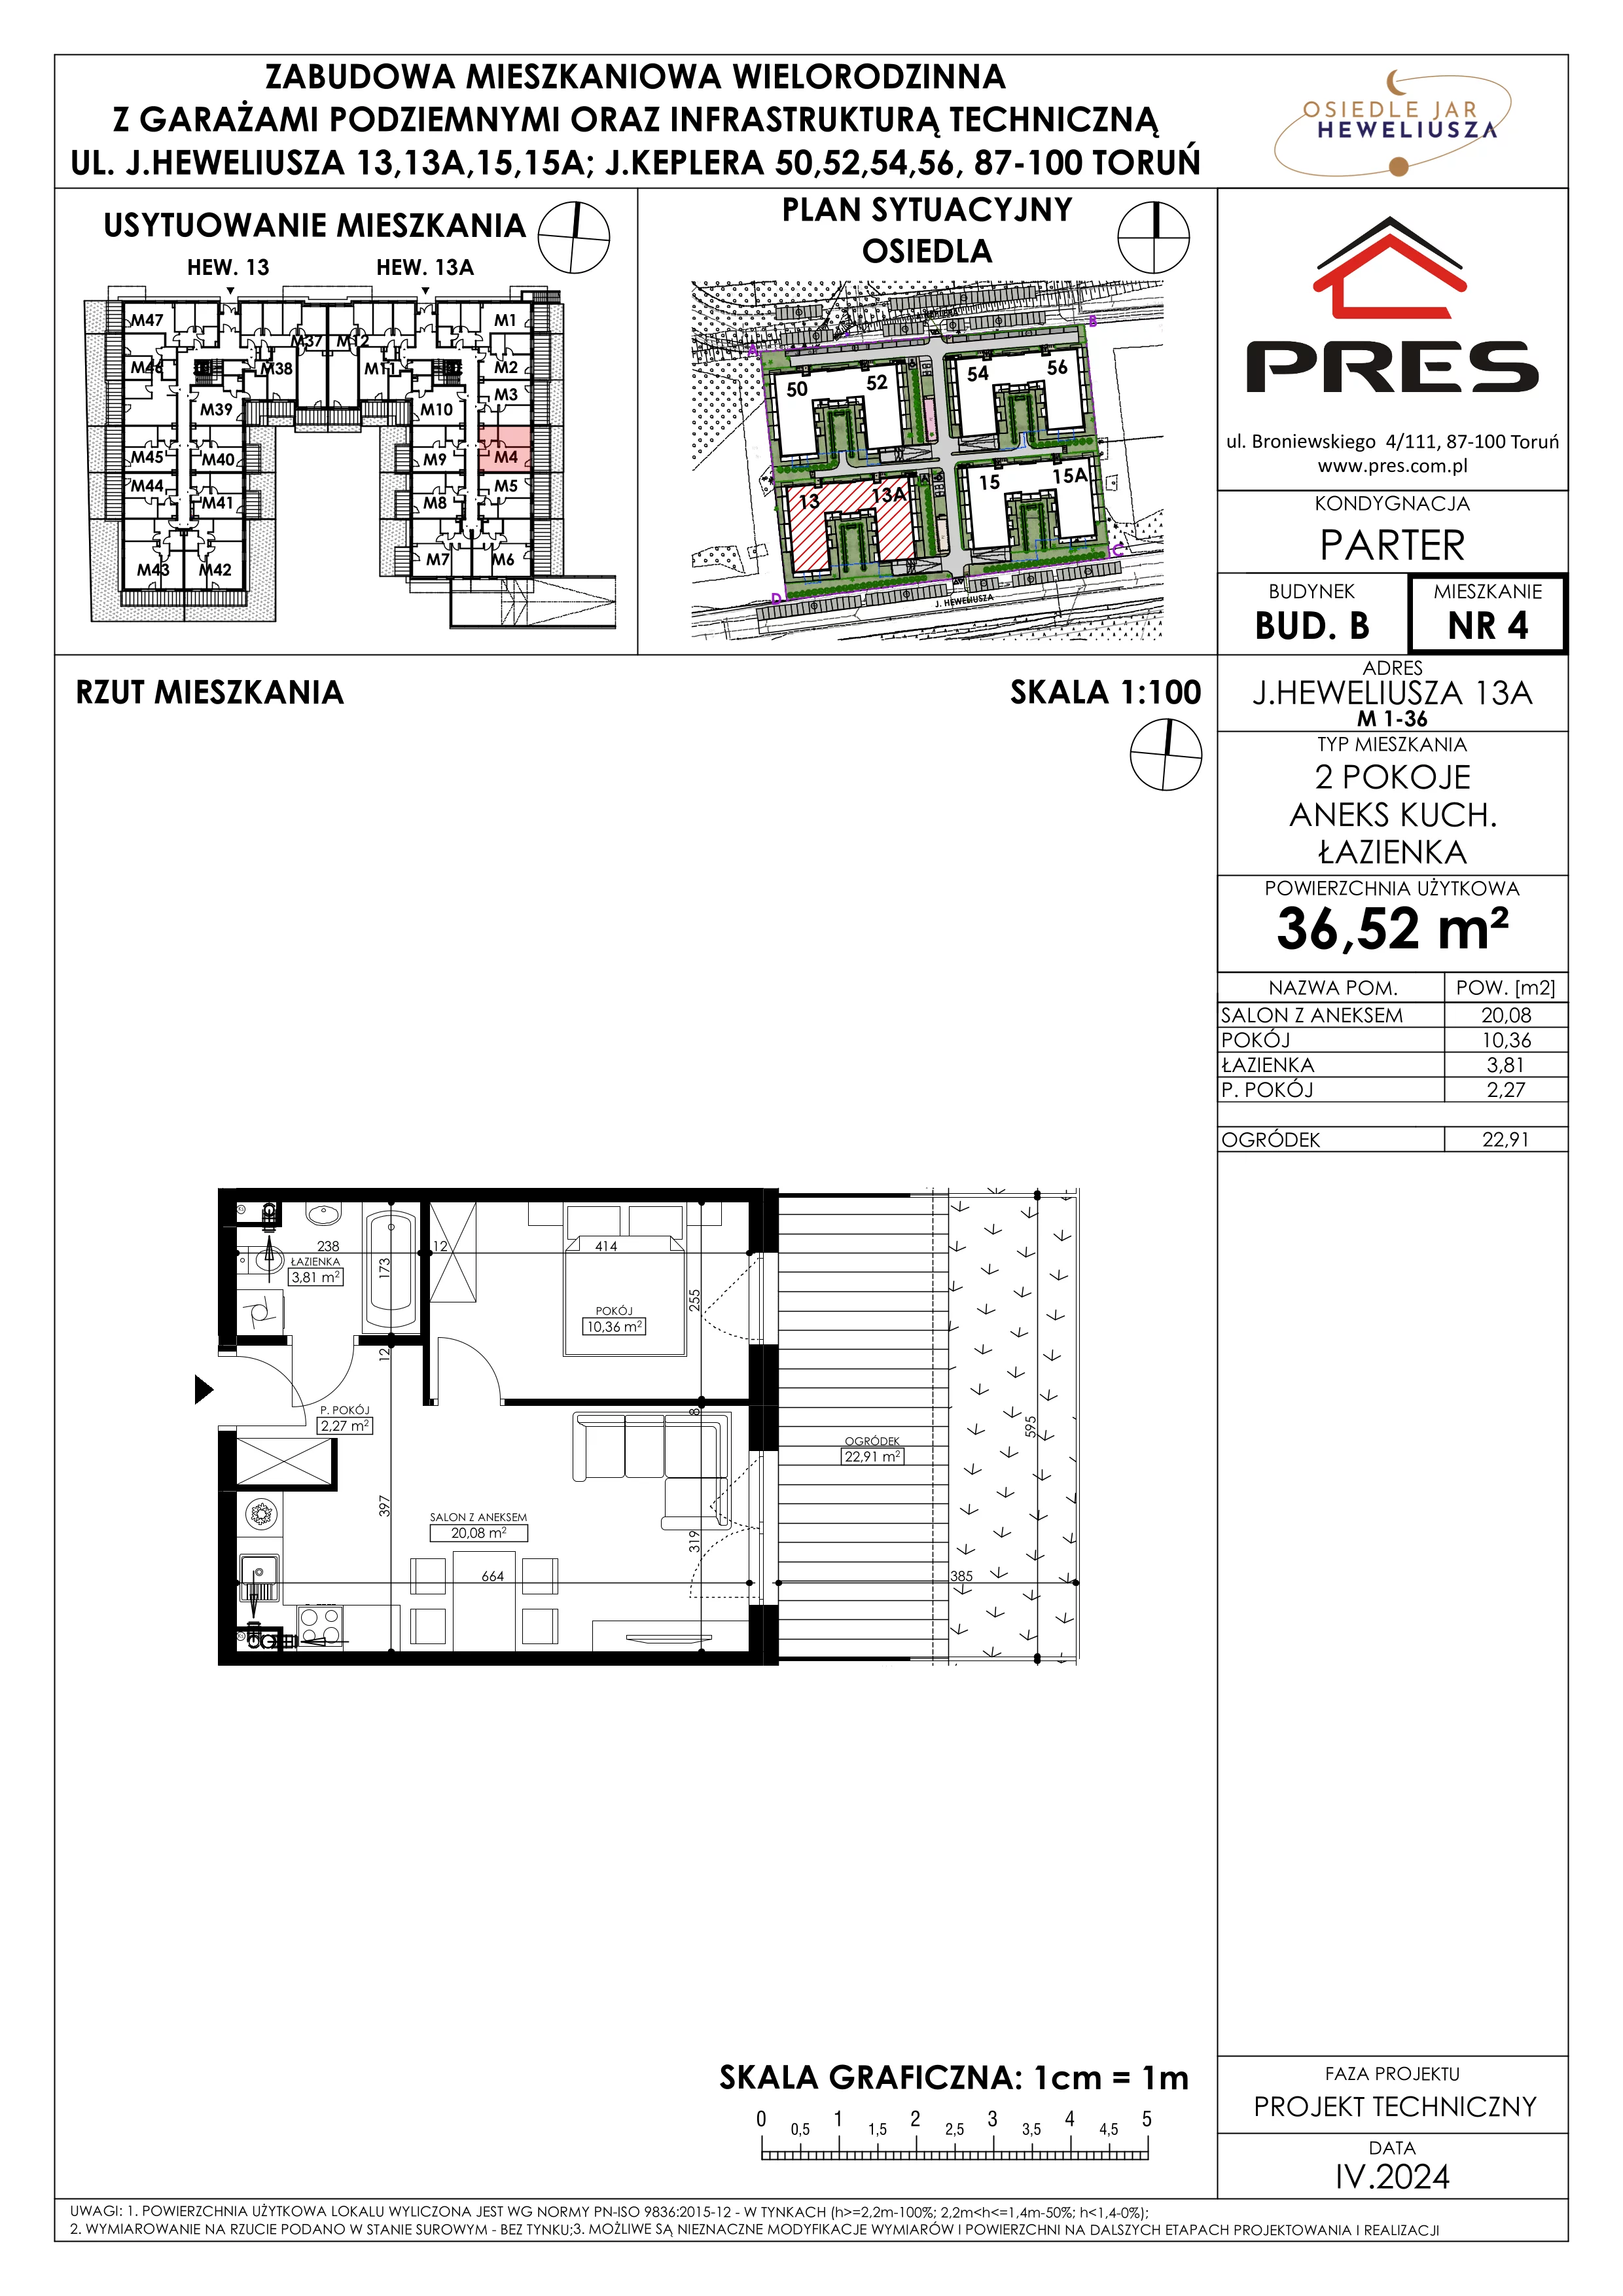 Mieszkanie 36,52 m², parter, oferta nr 4, Osiedle JAR Heweliusza - Etap II, Toruń, Wrzosy, JAR, ul. Heweliusza 13-15A